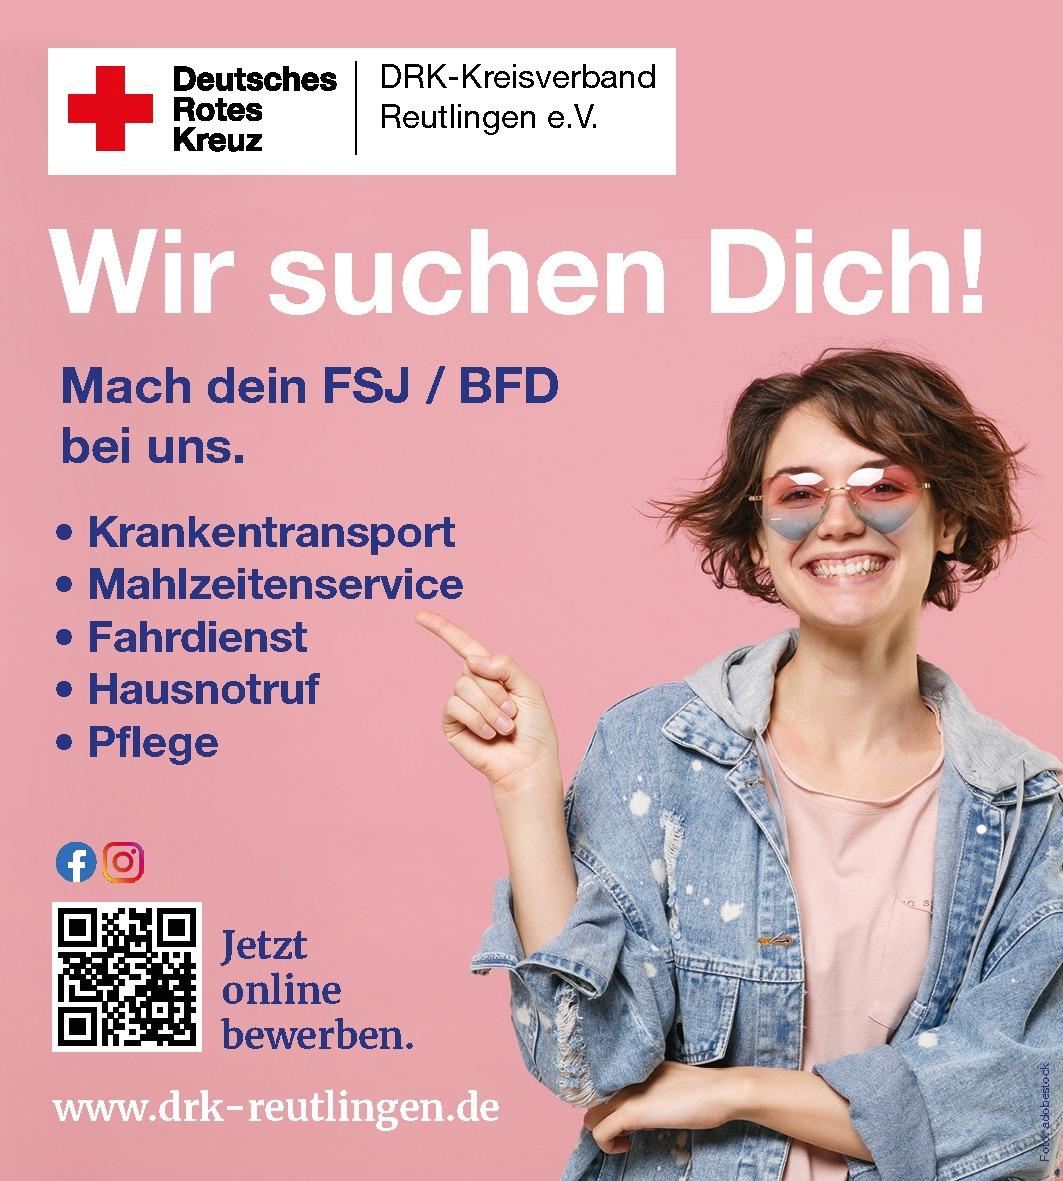 FSJ/BFS beim DRK (Fahrdienste, Pflege, Krankentransport) | Deutsches Rotes Kreuz, Kreisverband Reutlingen e.V., Reutlingen